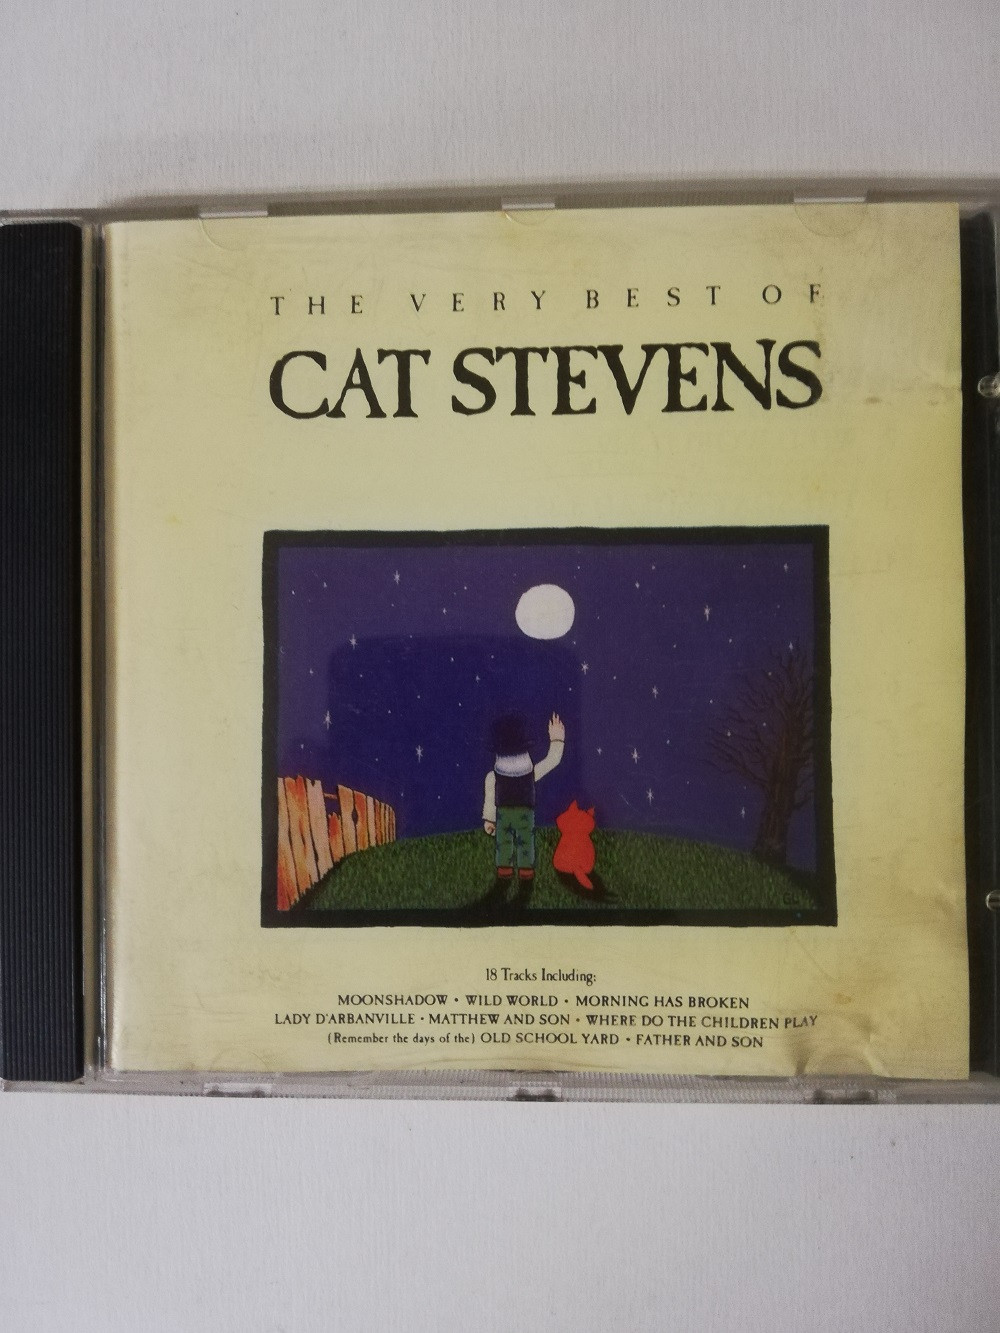 Imagen CD CAT STEVENS - THE VERY BEST OF CAT STEVENS 1